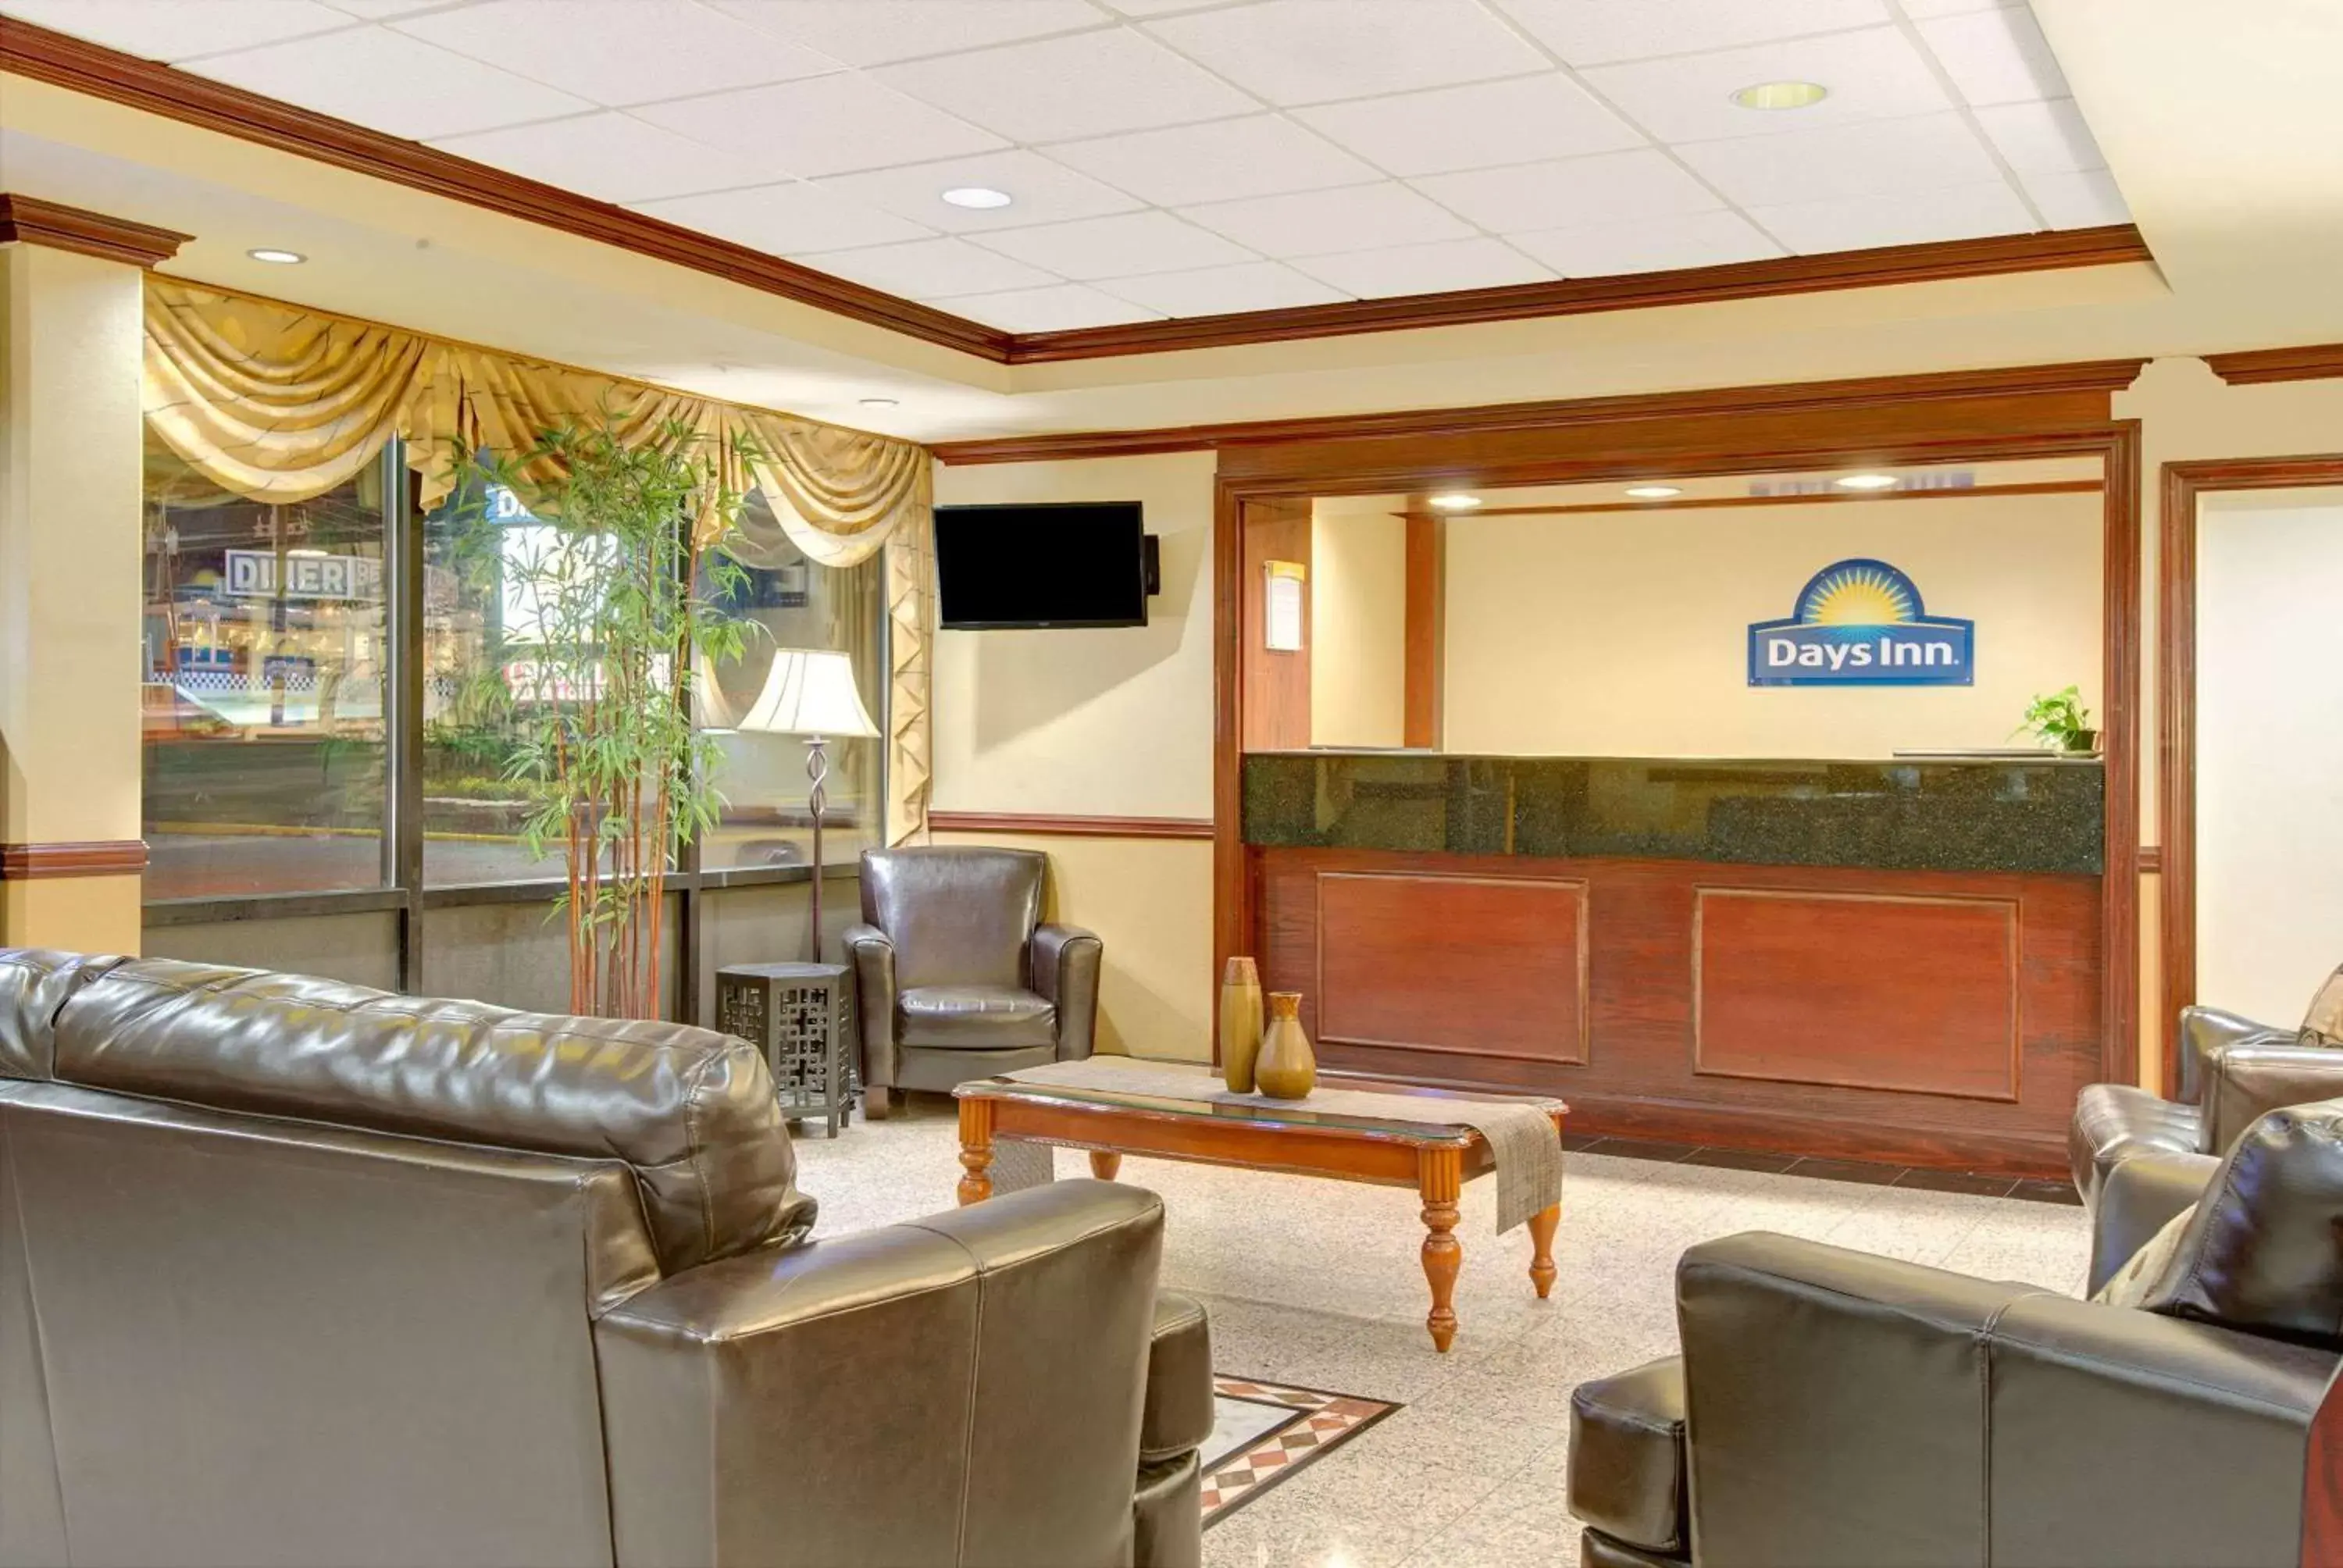 Lobby or reception, Lobby/Reception in Days Inn by Wyndham Towson